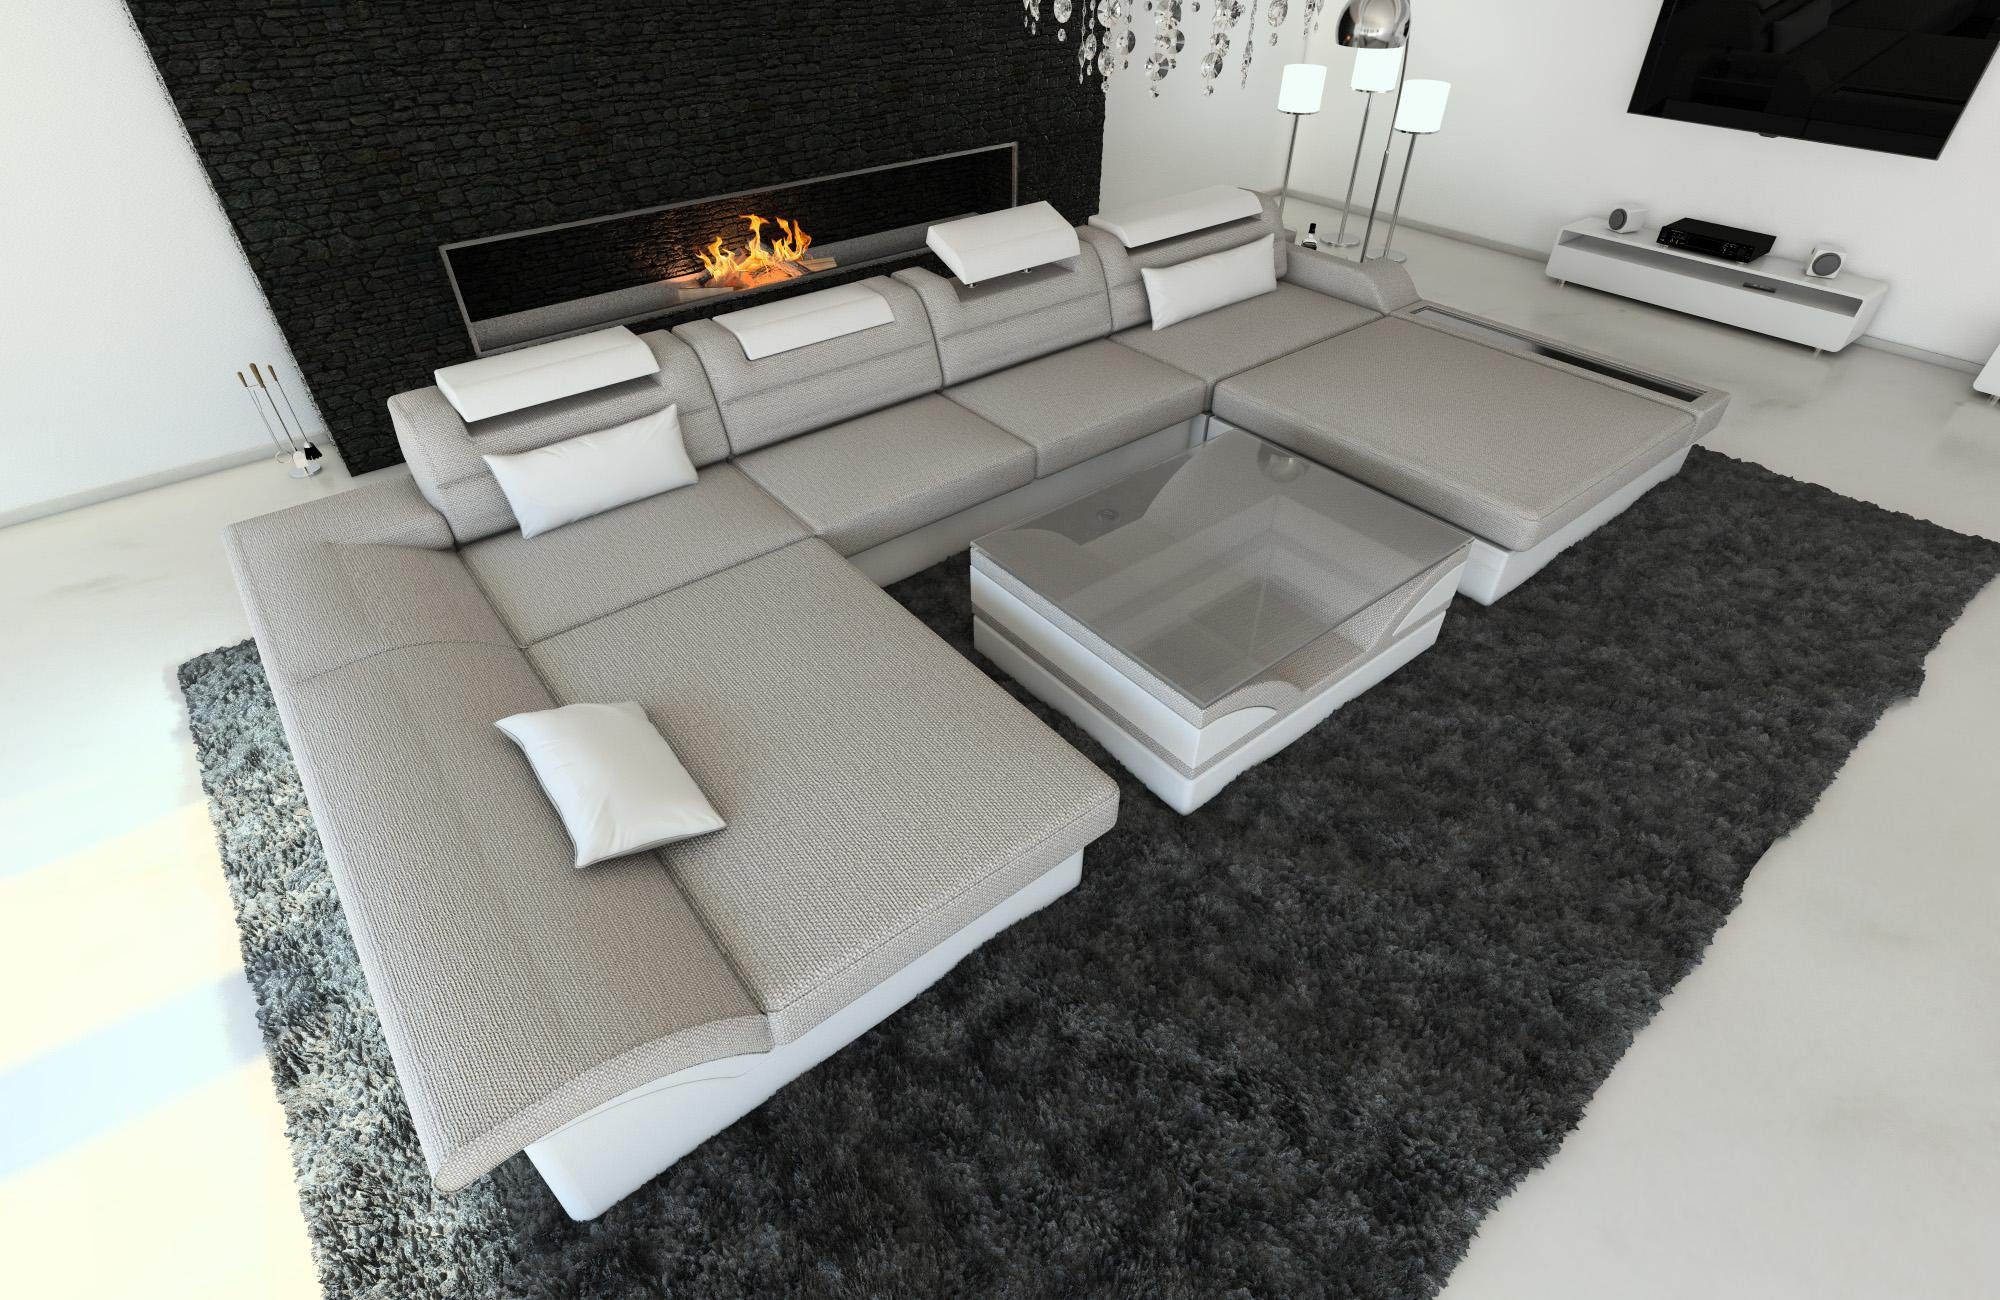 Sofa Wohnlandschaft Form H2 Bettfunktion, U Stoff Stoffsofa, Monza Dreams Polster mit Couch Designersofa Macchiato-Weiss LED, ausziehbare